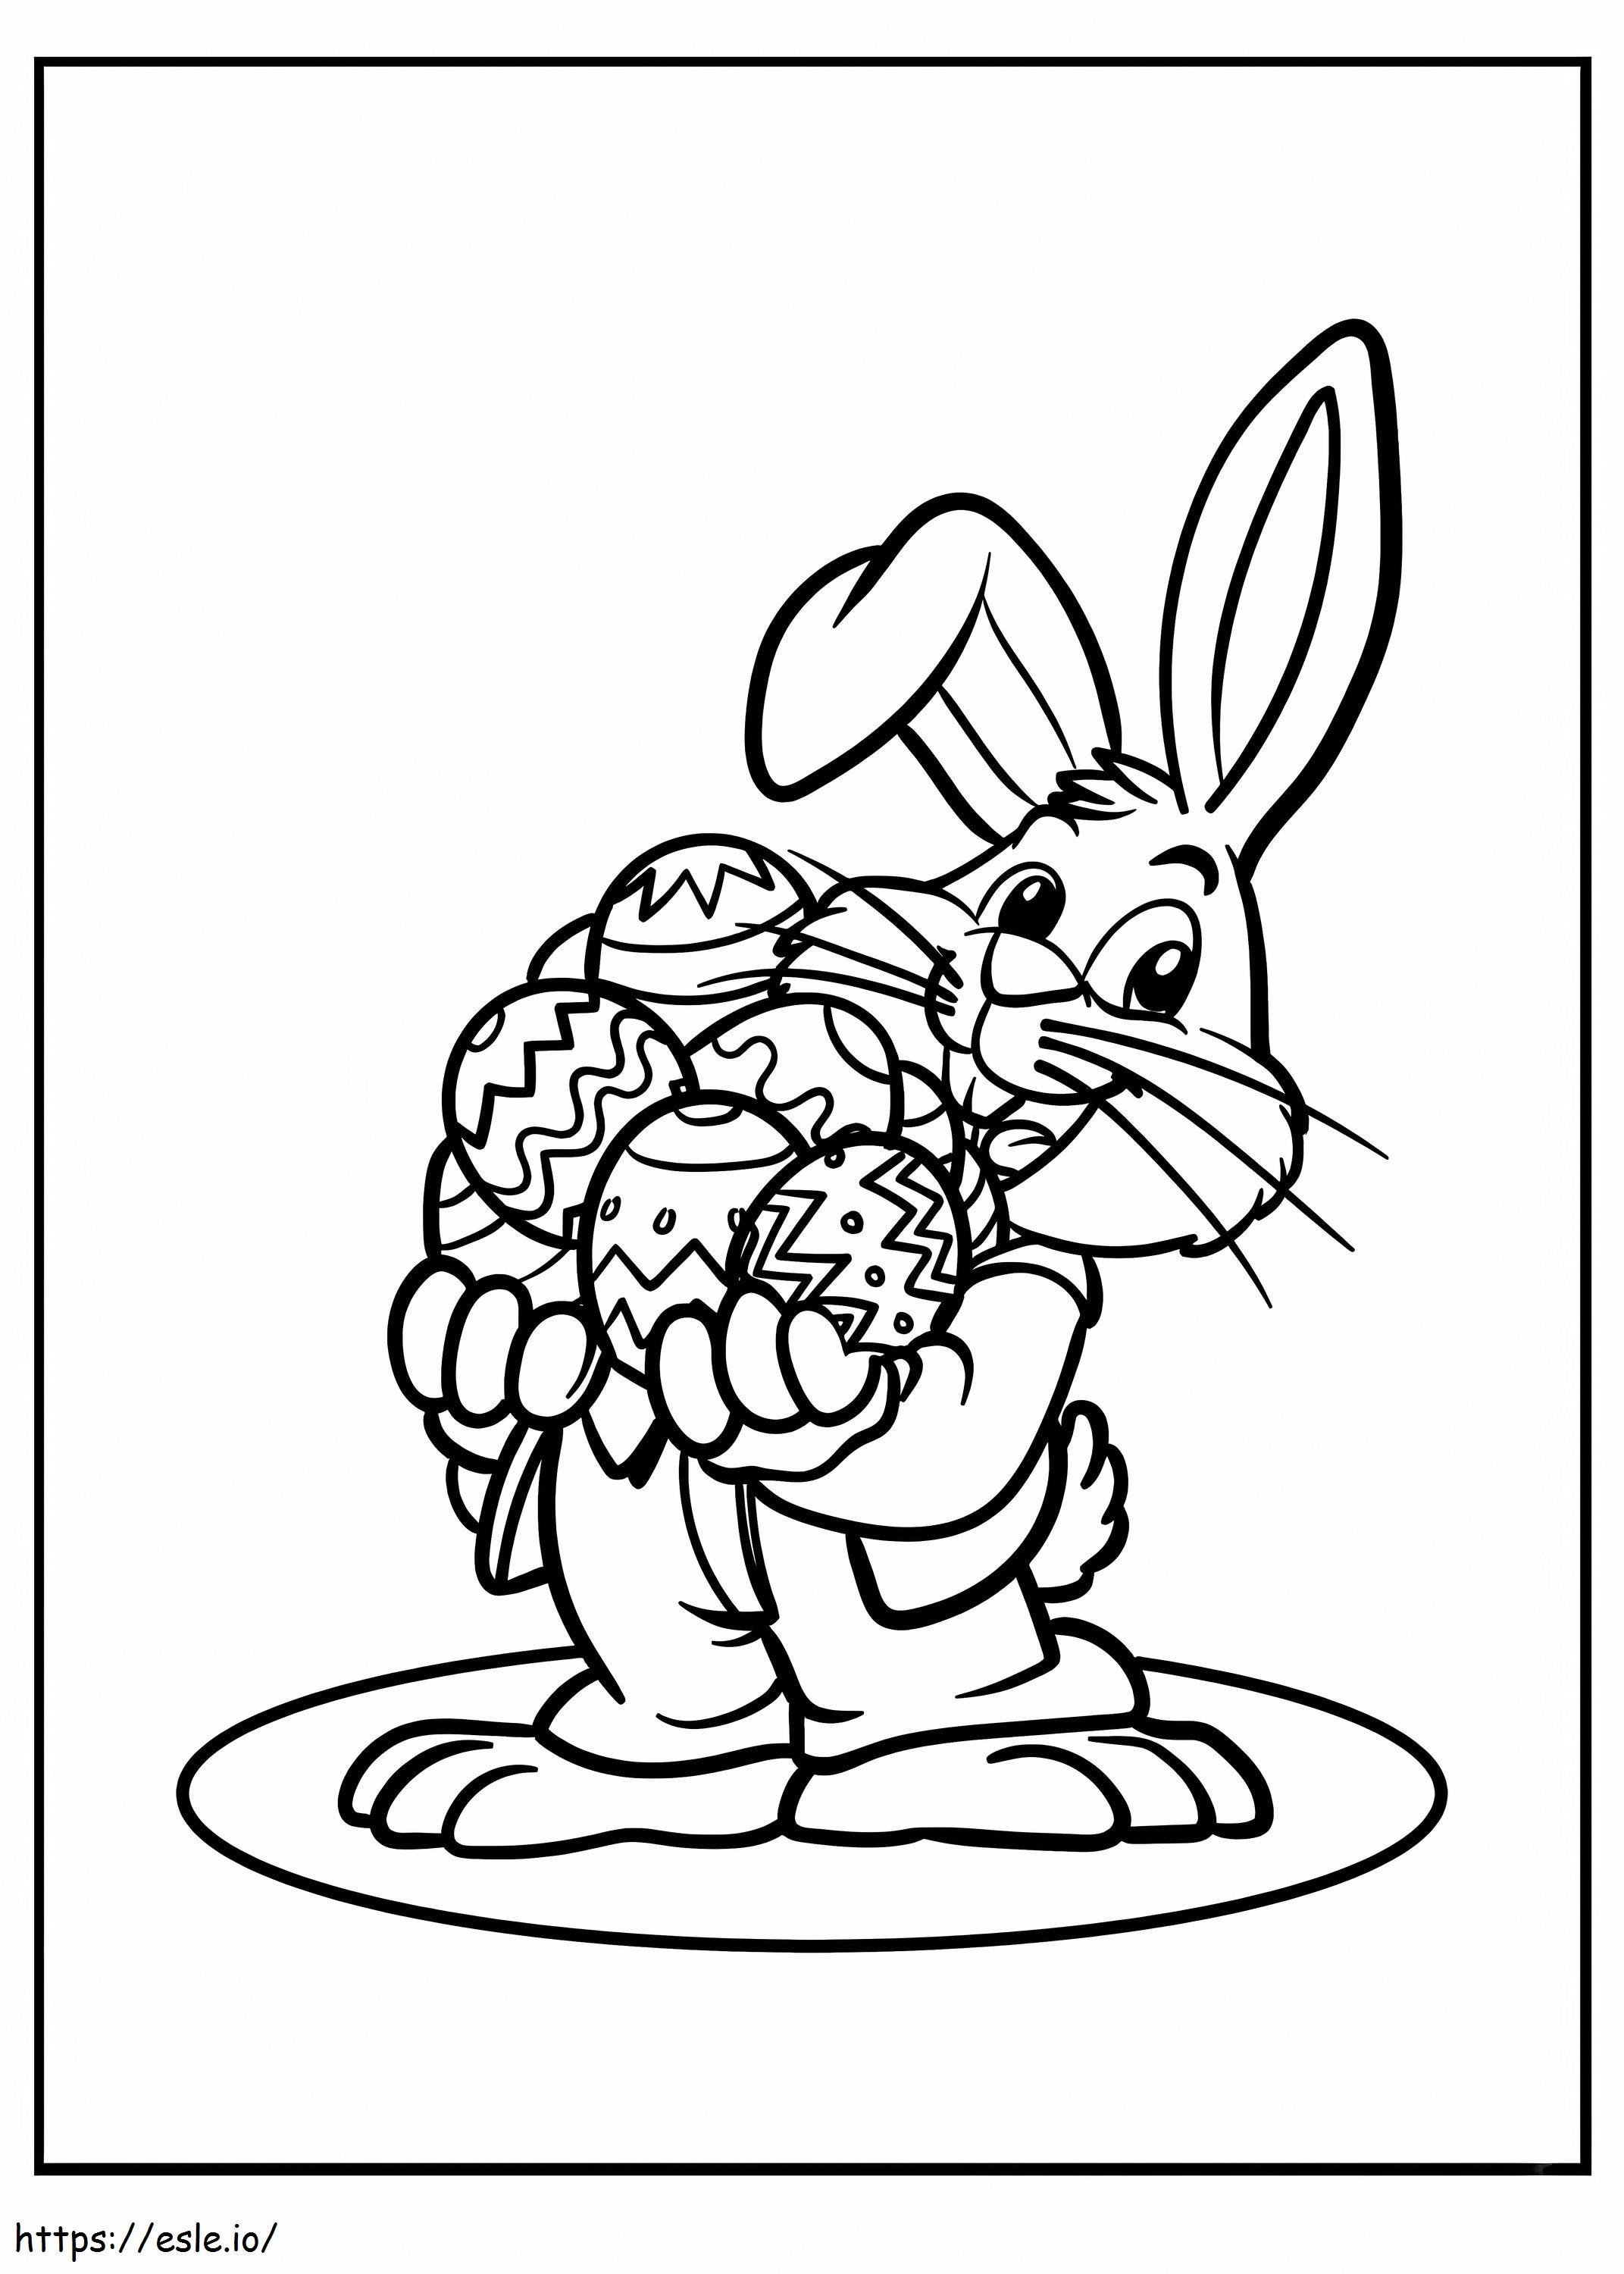 Bugs Bunny sosteniendo huevos de Pascua para colorear